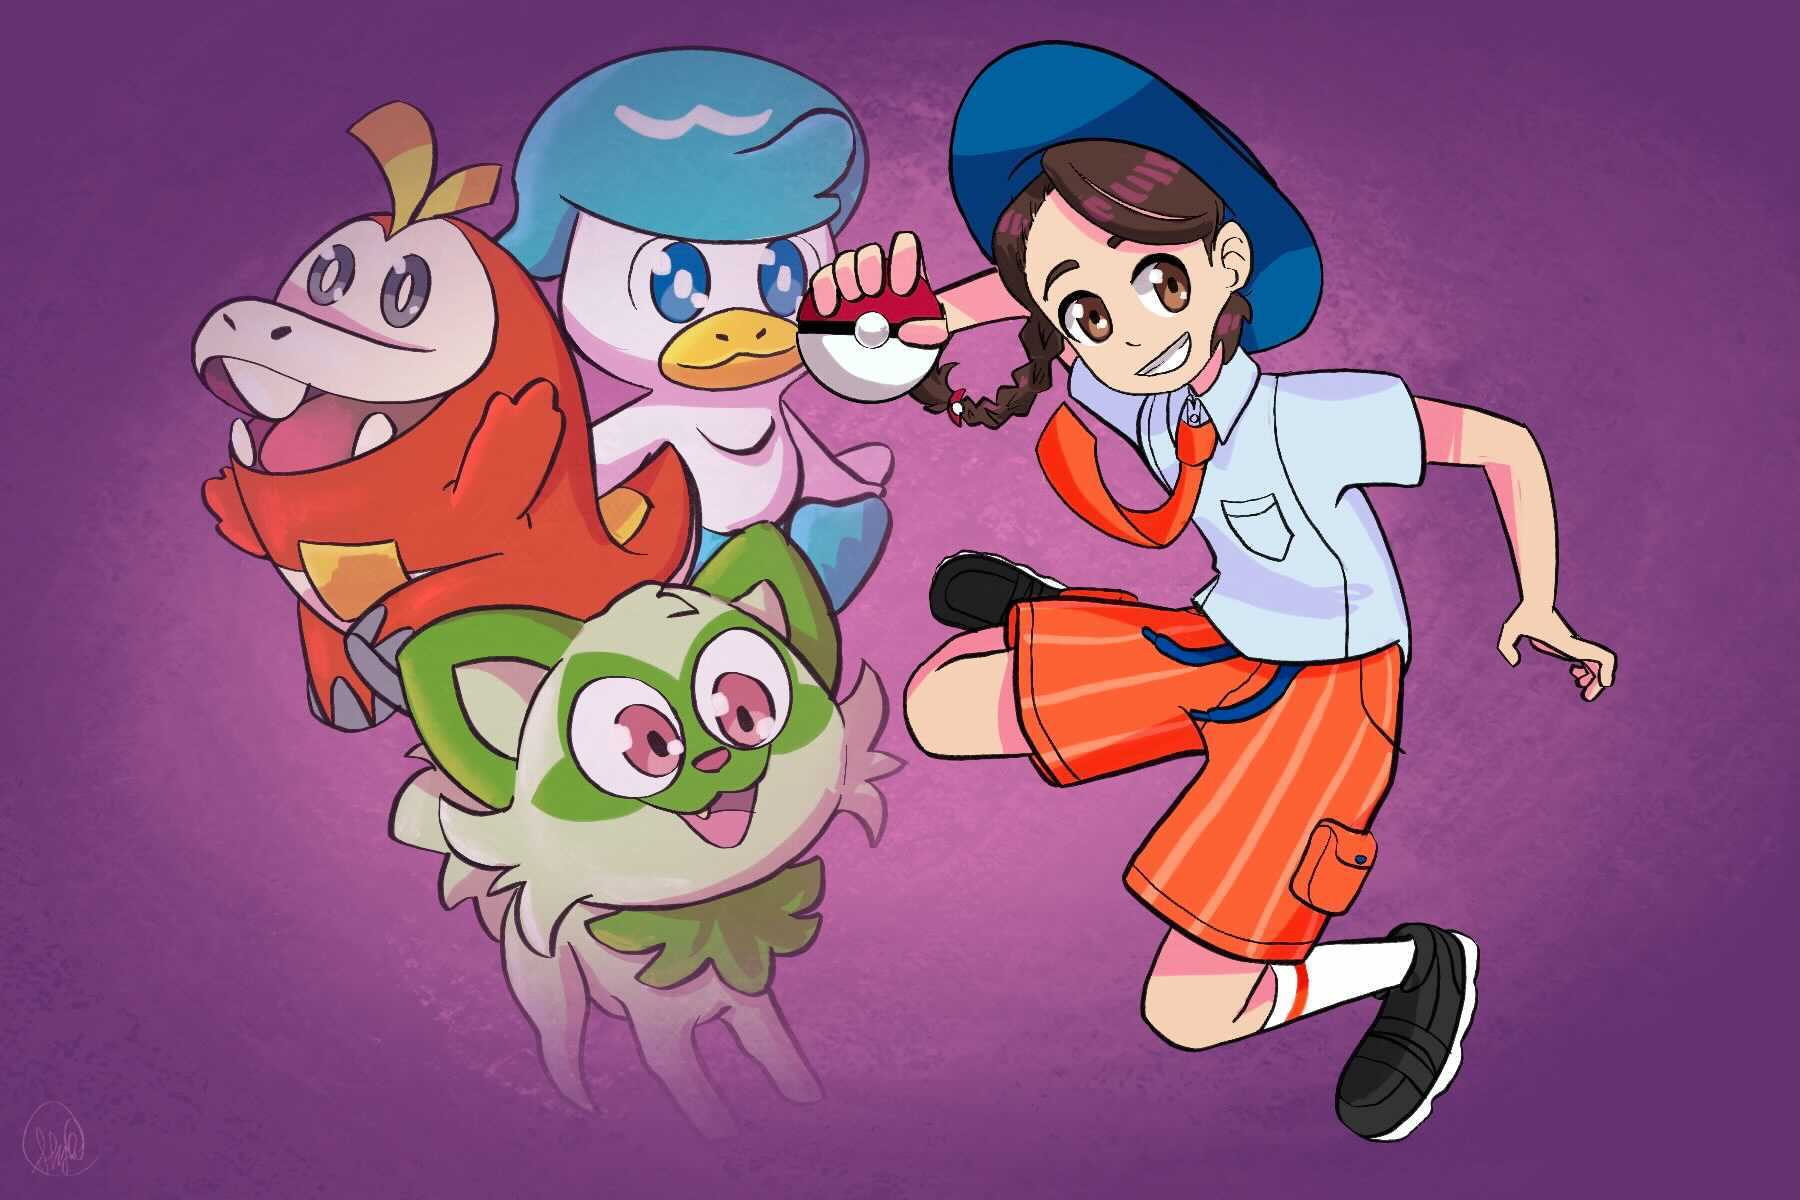 An illustration of a Pokémon trainer and her Pokémon on Pokémon day